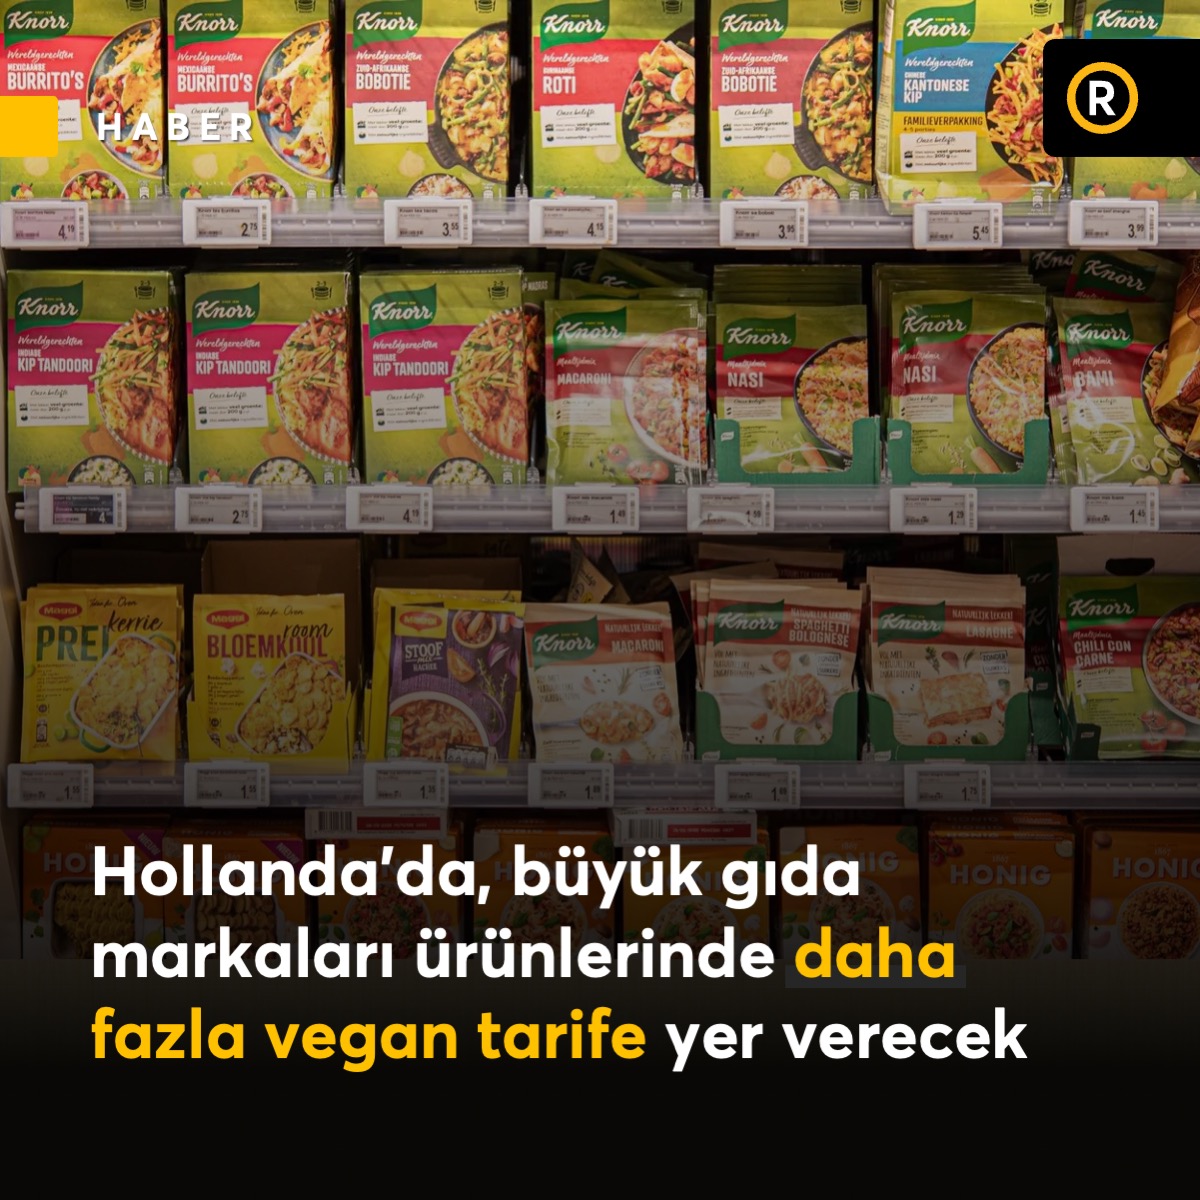 Hollanda'nın önde gelen dokuz gıda markası, ambalajlarında yemek tariflerinin yarısından fazlasını et içermeyen seçeneklerle değiştirmeyi taahhüt etti. Bu karar, hayvan hakları savunucusu Wakker Dier'in baskısı ardından gerçekleşti.

Conimex, Fairtrade Original, Jumbo, Knorr, Koh